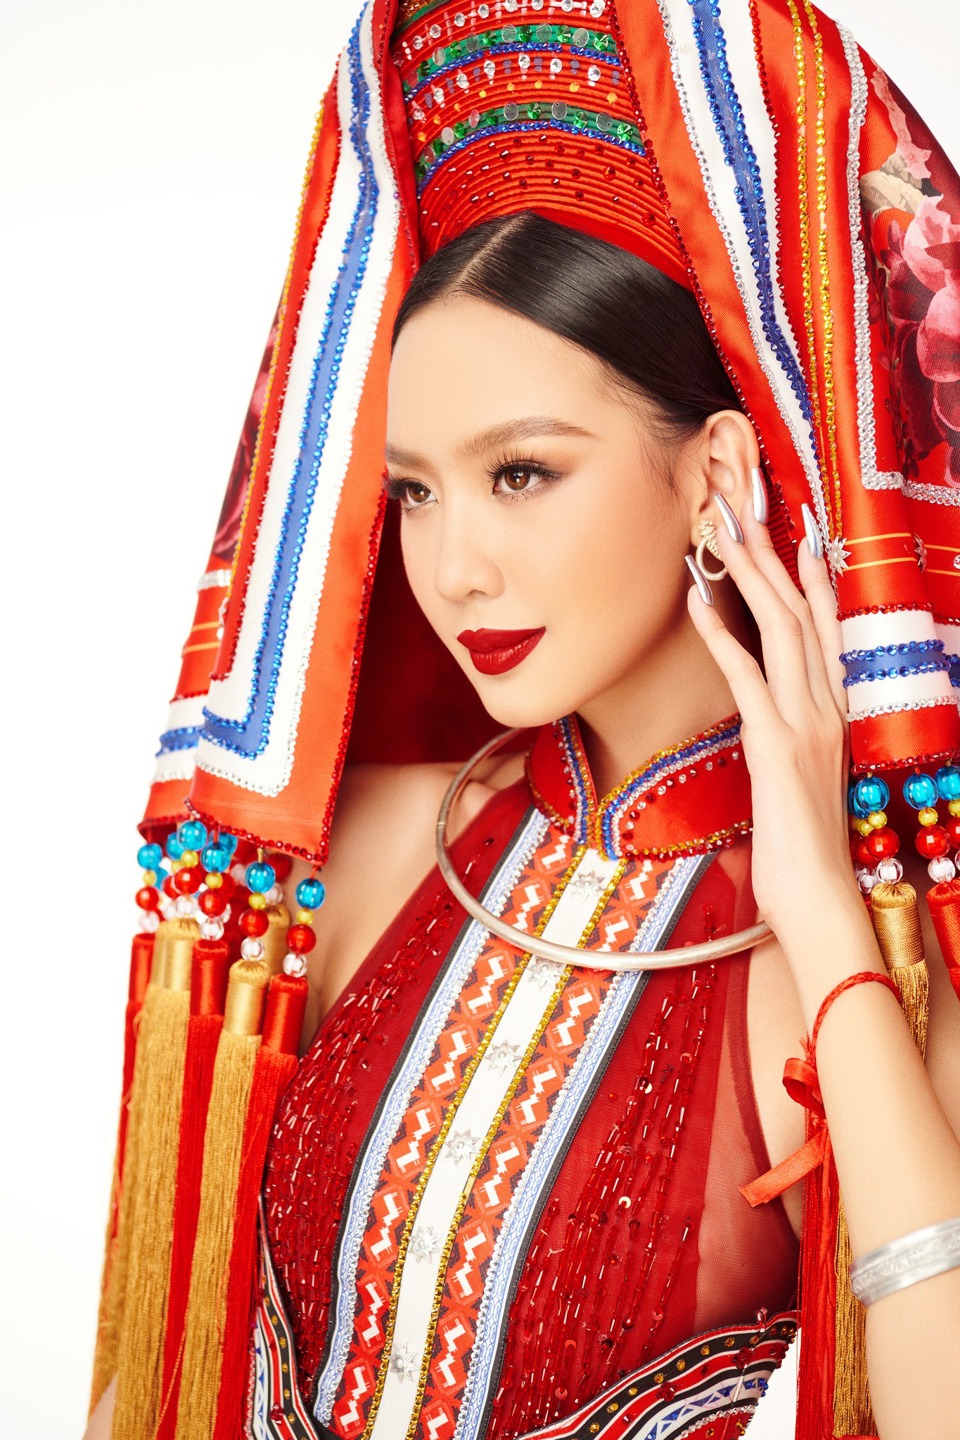 Bảo Ngọc gặp sự cố với bộ váy cồng kềnh nhất Miss Intercontinental 2022 - Ảnh 4